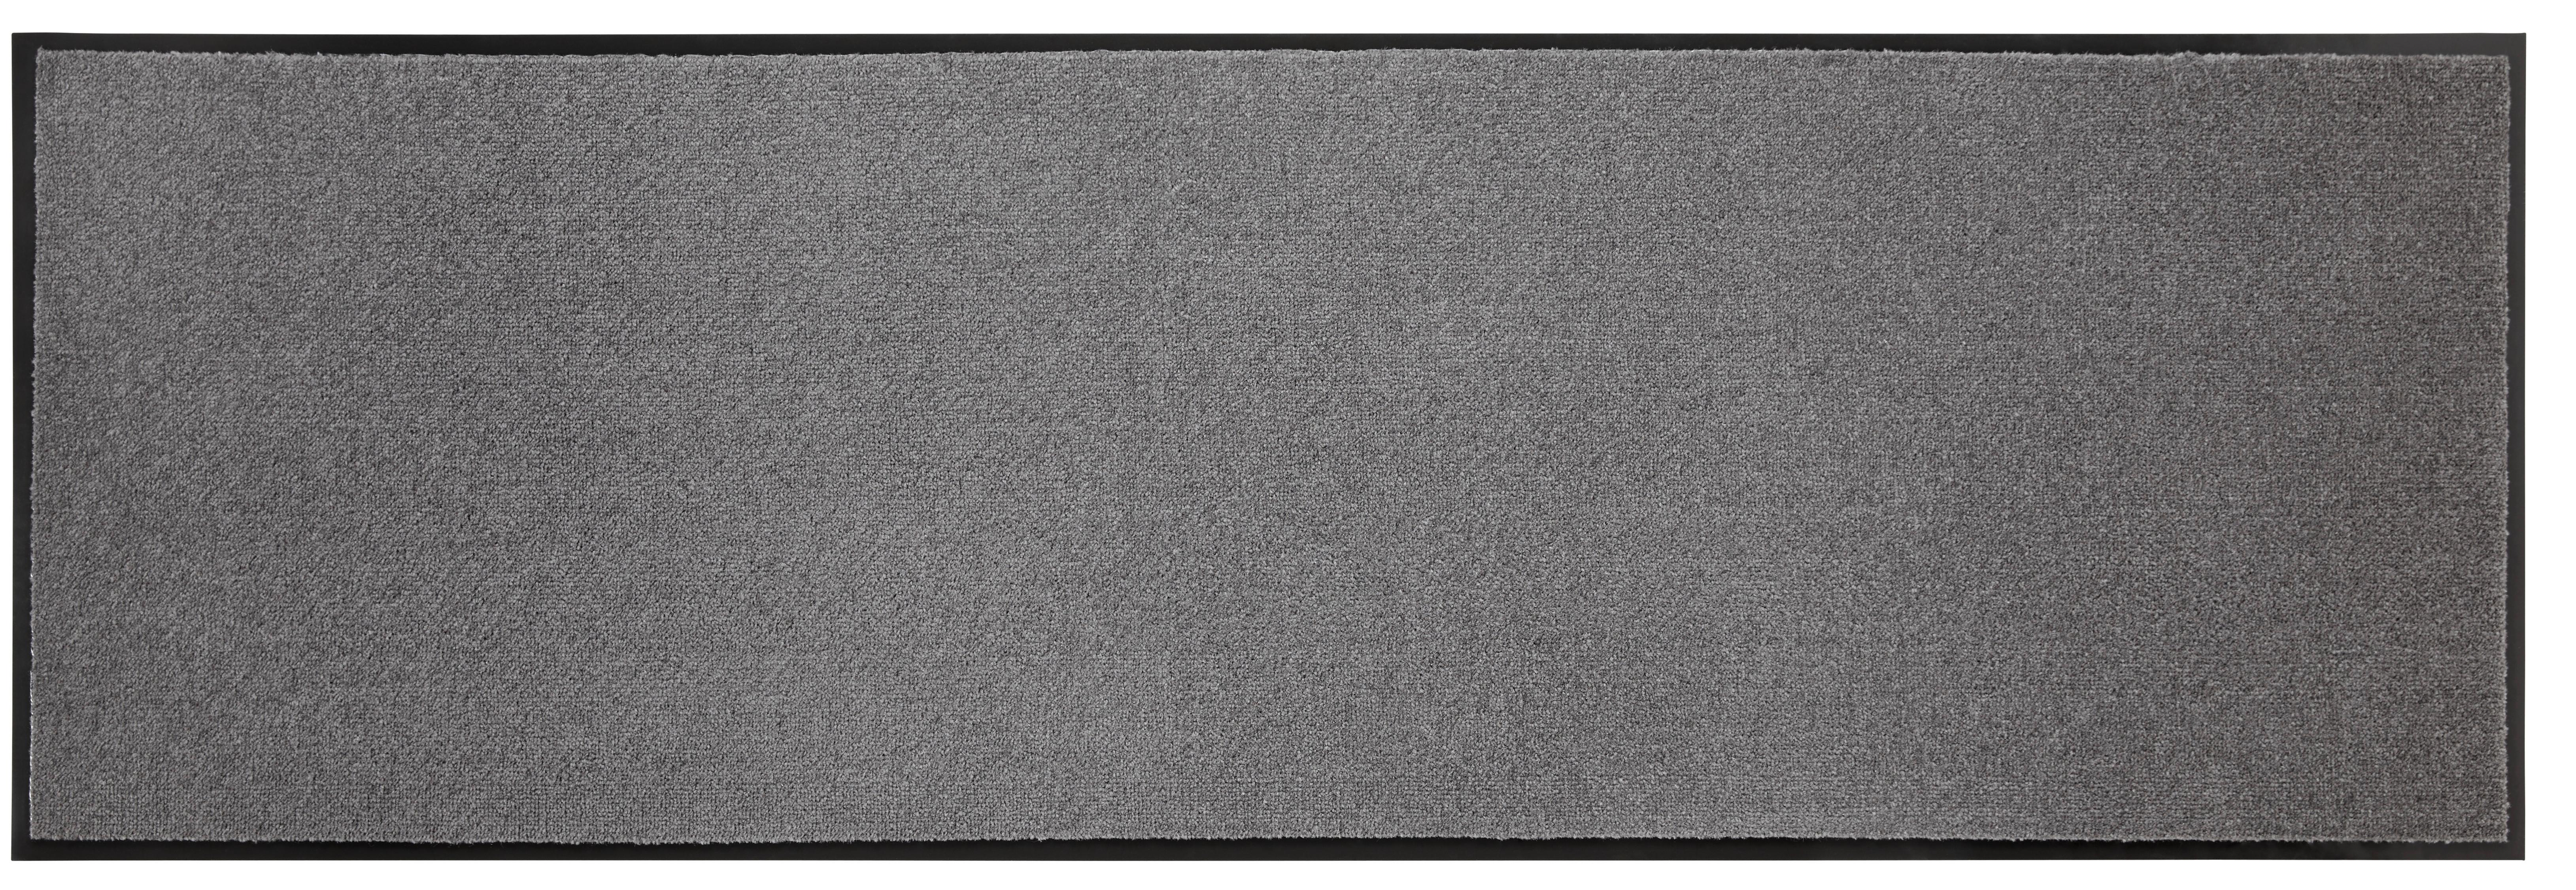 Dveřní Rohožka Eton 4, 60/180cm, Antracit - antracitová, Konvenční, textil (60/180cm) - Modern Living